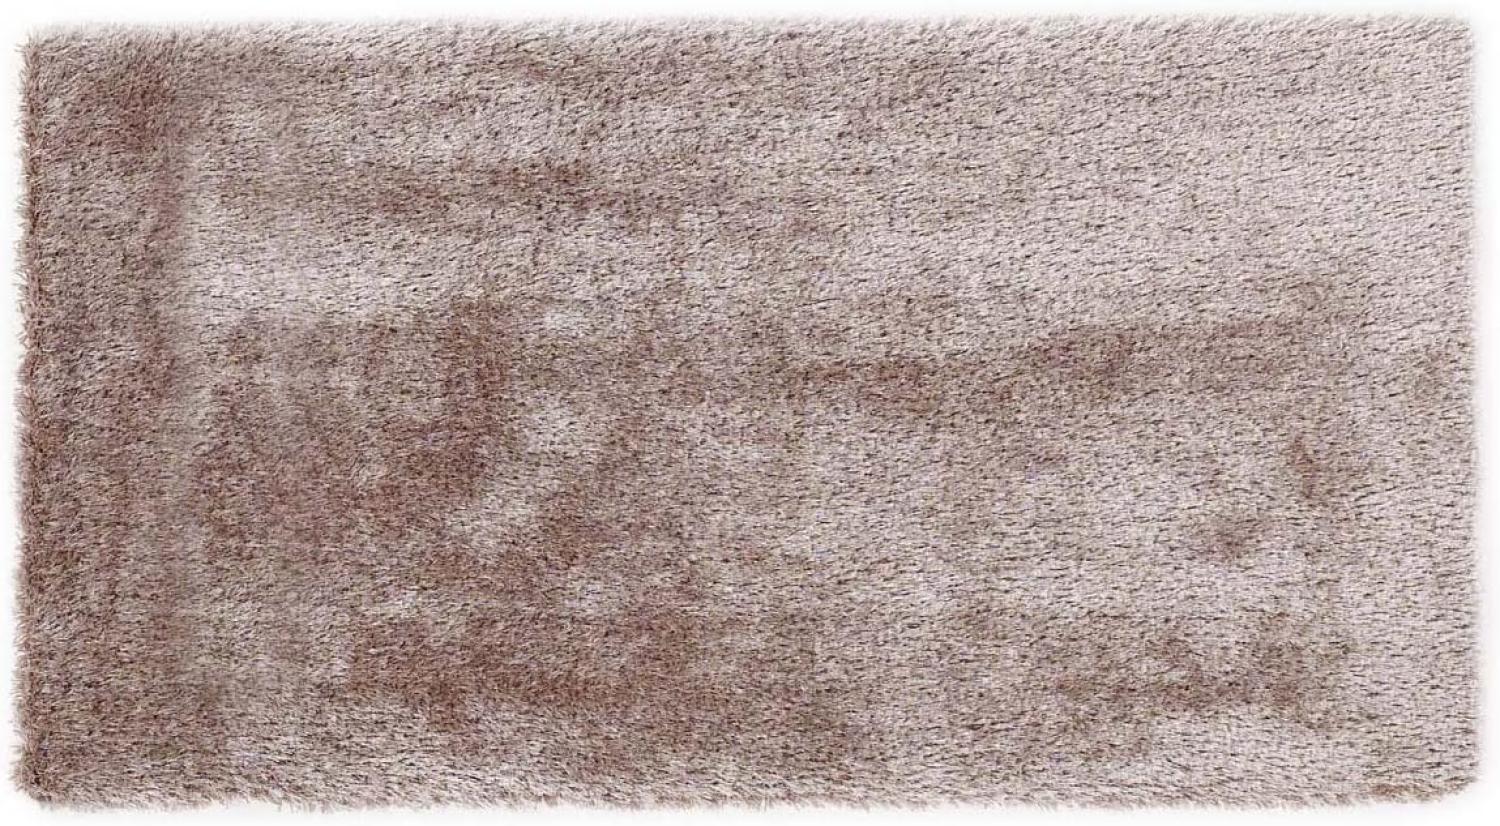 Teppich- Shaggy Hochflor Teppich ideal für alle Räume Beige, 190 x 130 cm Bild 1